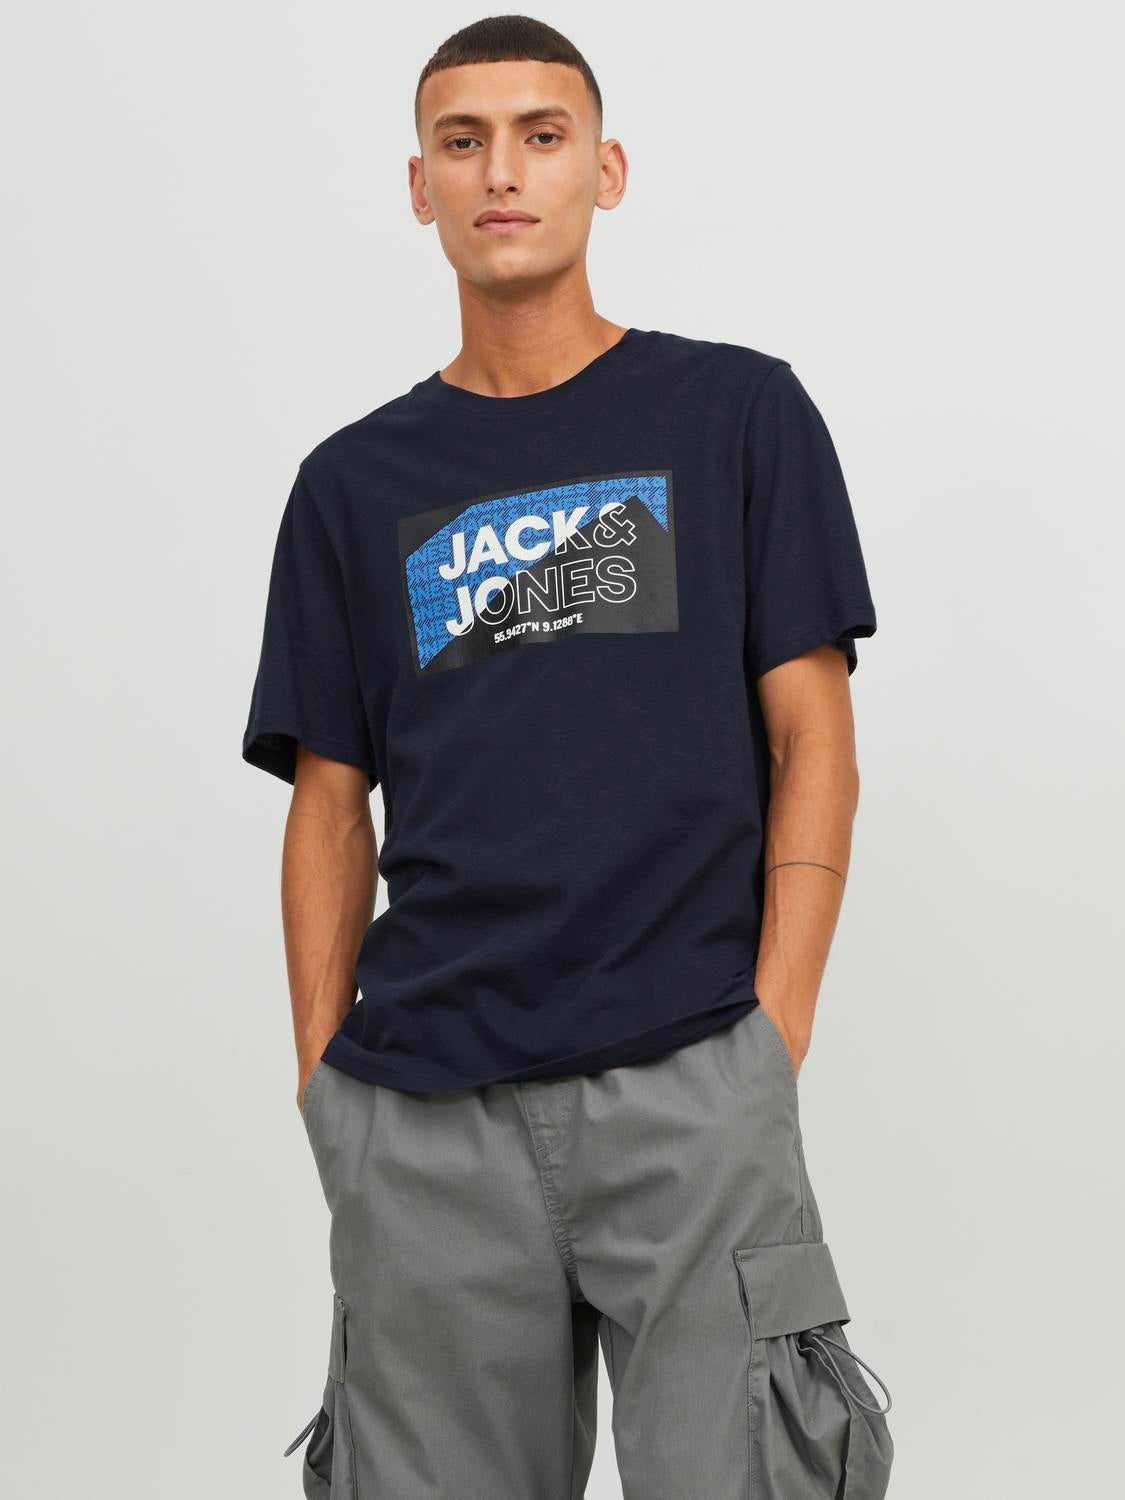 jackjones logocrewneckt shirt blue